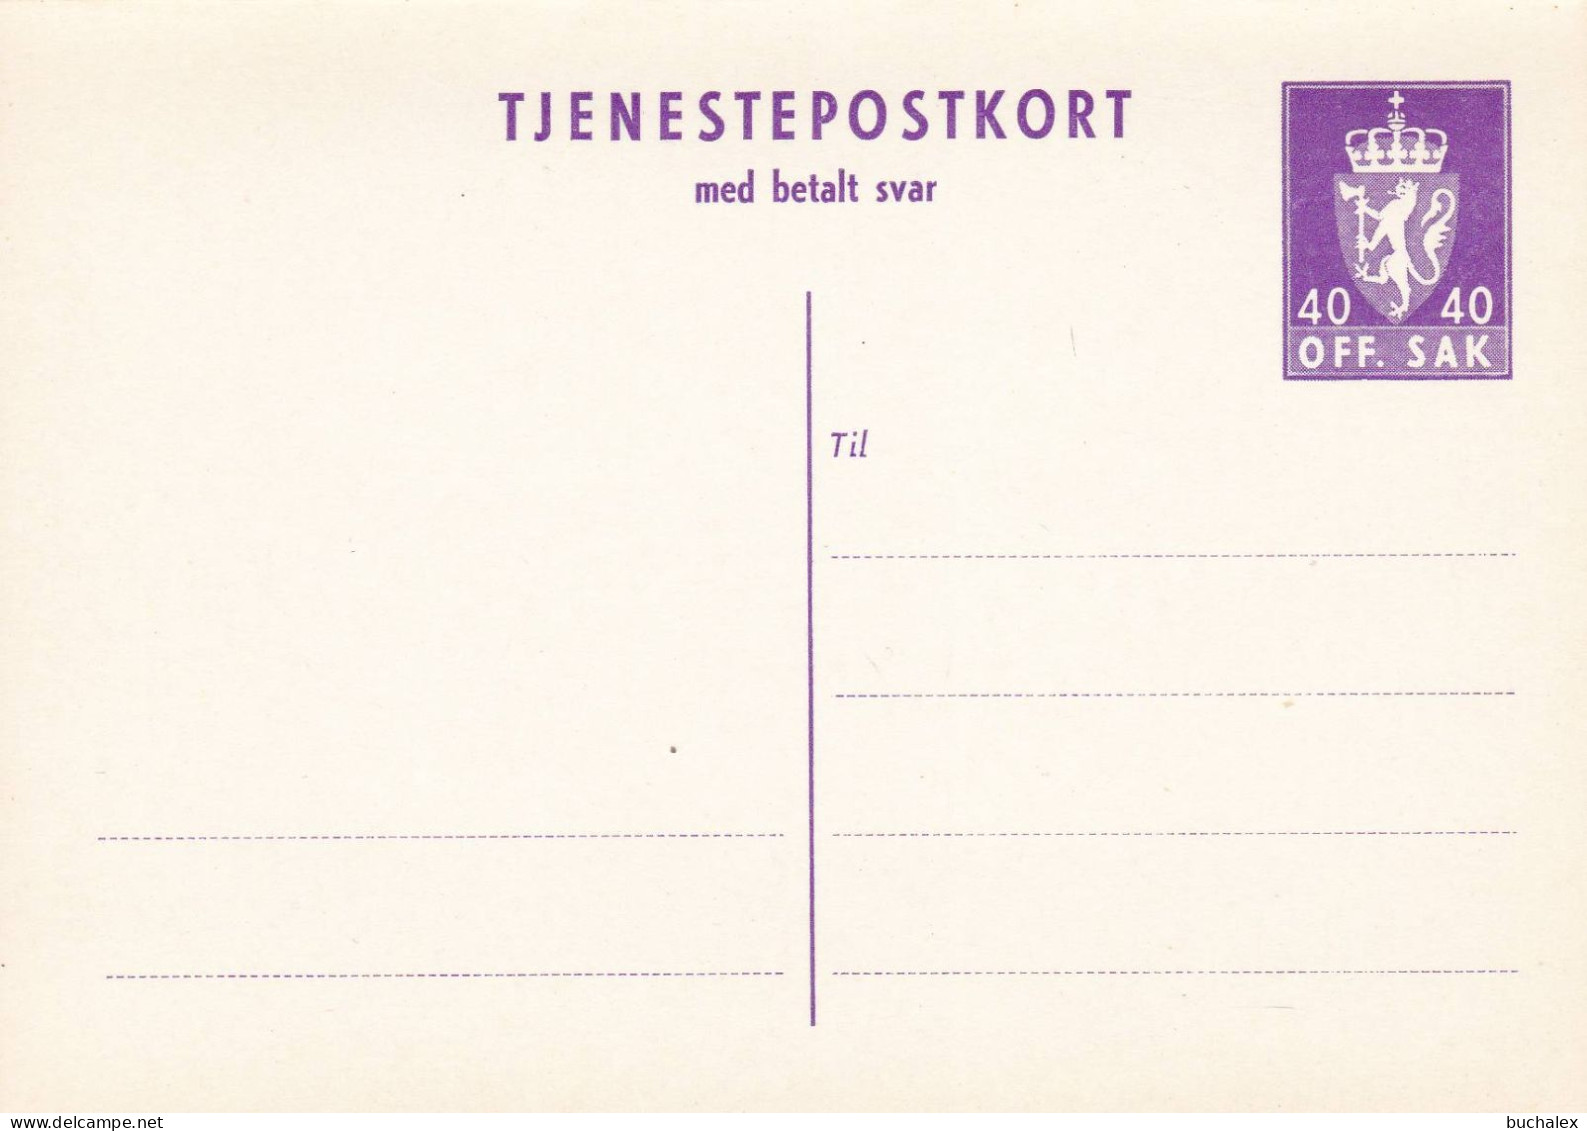 Norwegen Tjenestepostkort Med Betalt Svar Ungelaufen DP32 - Postal Stationery